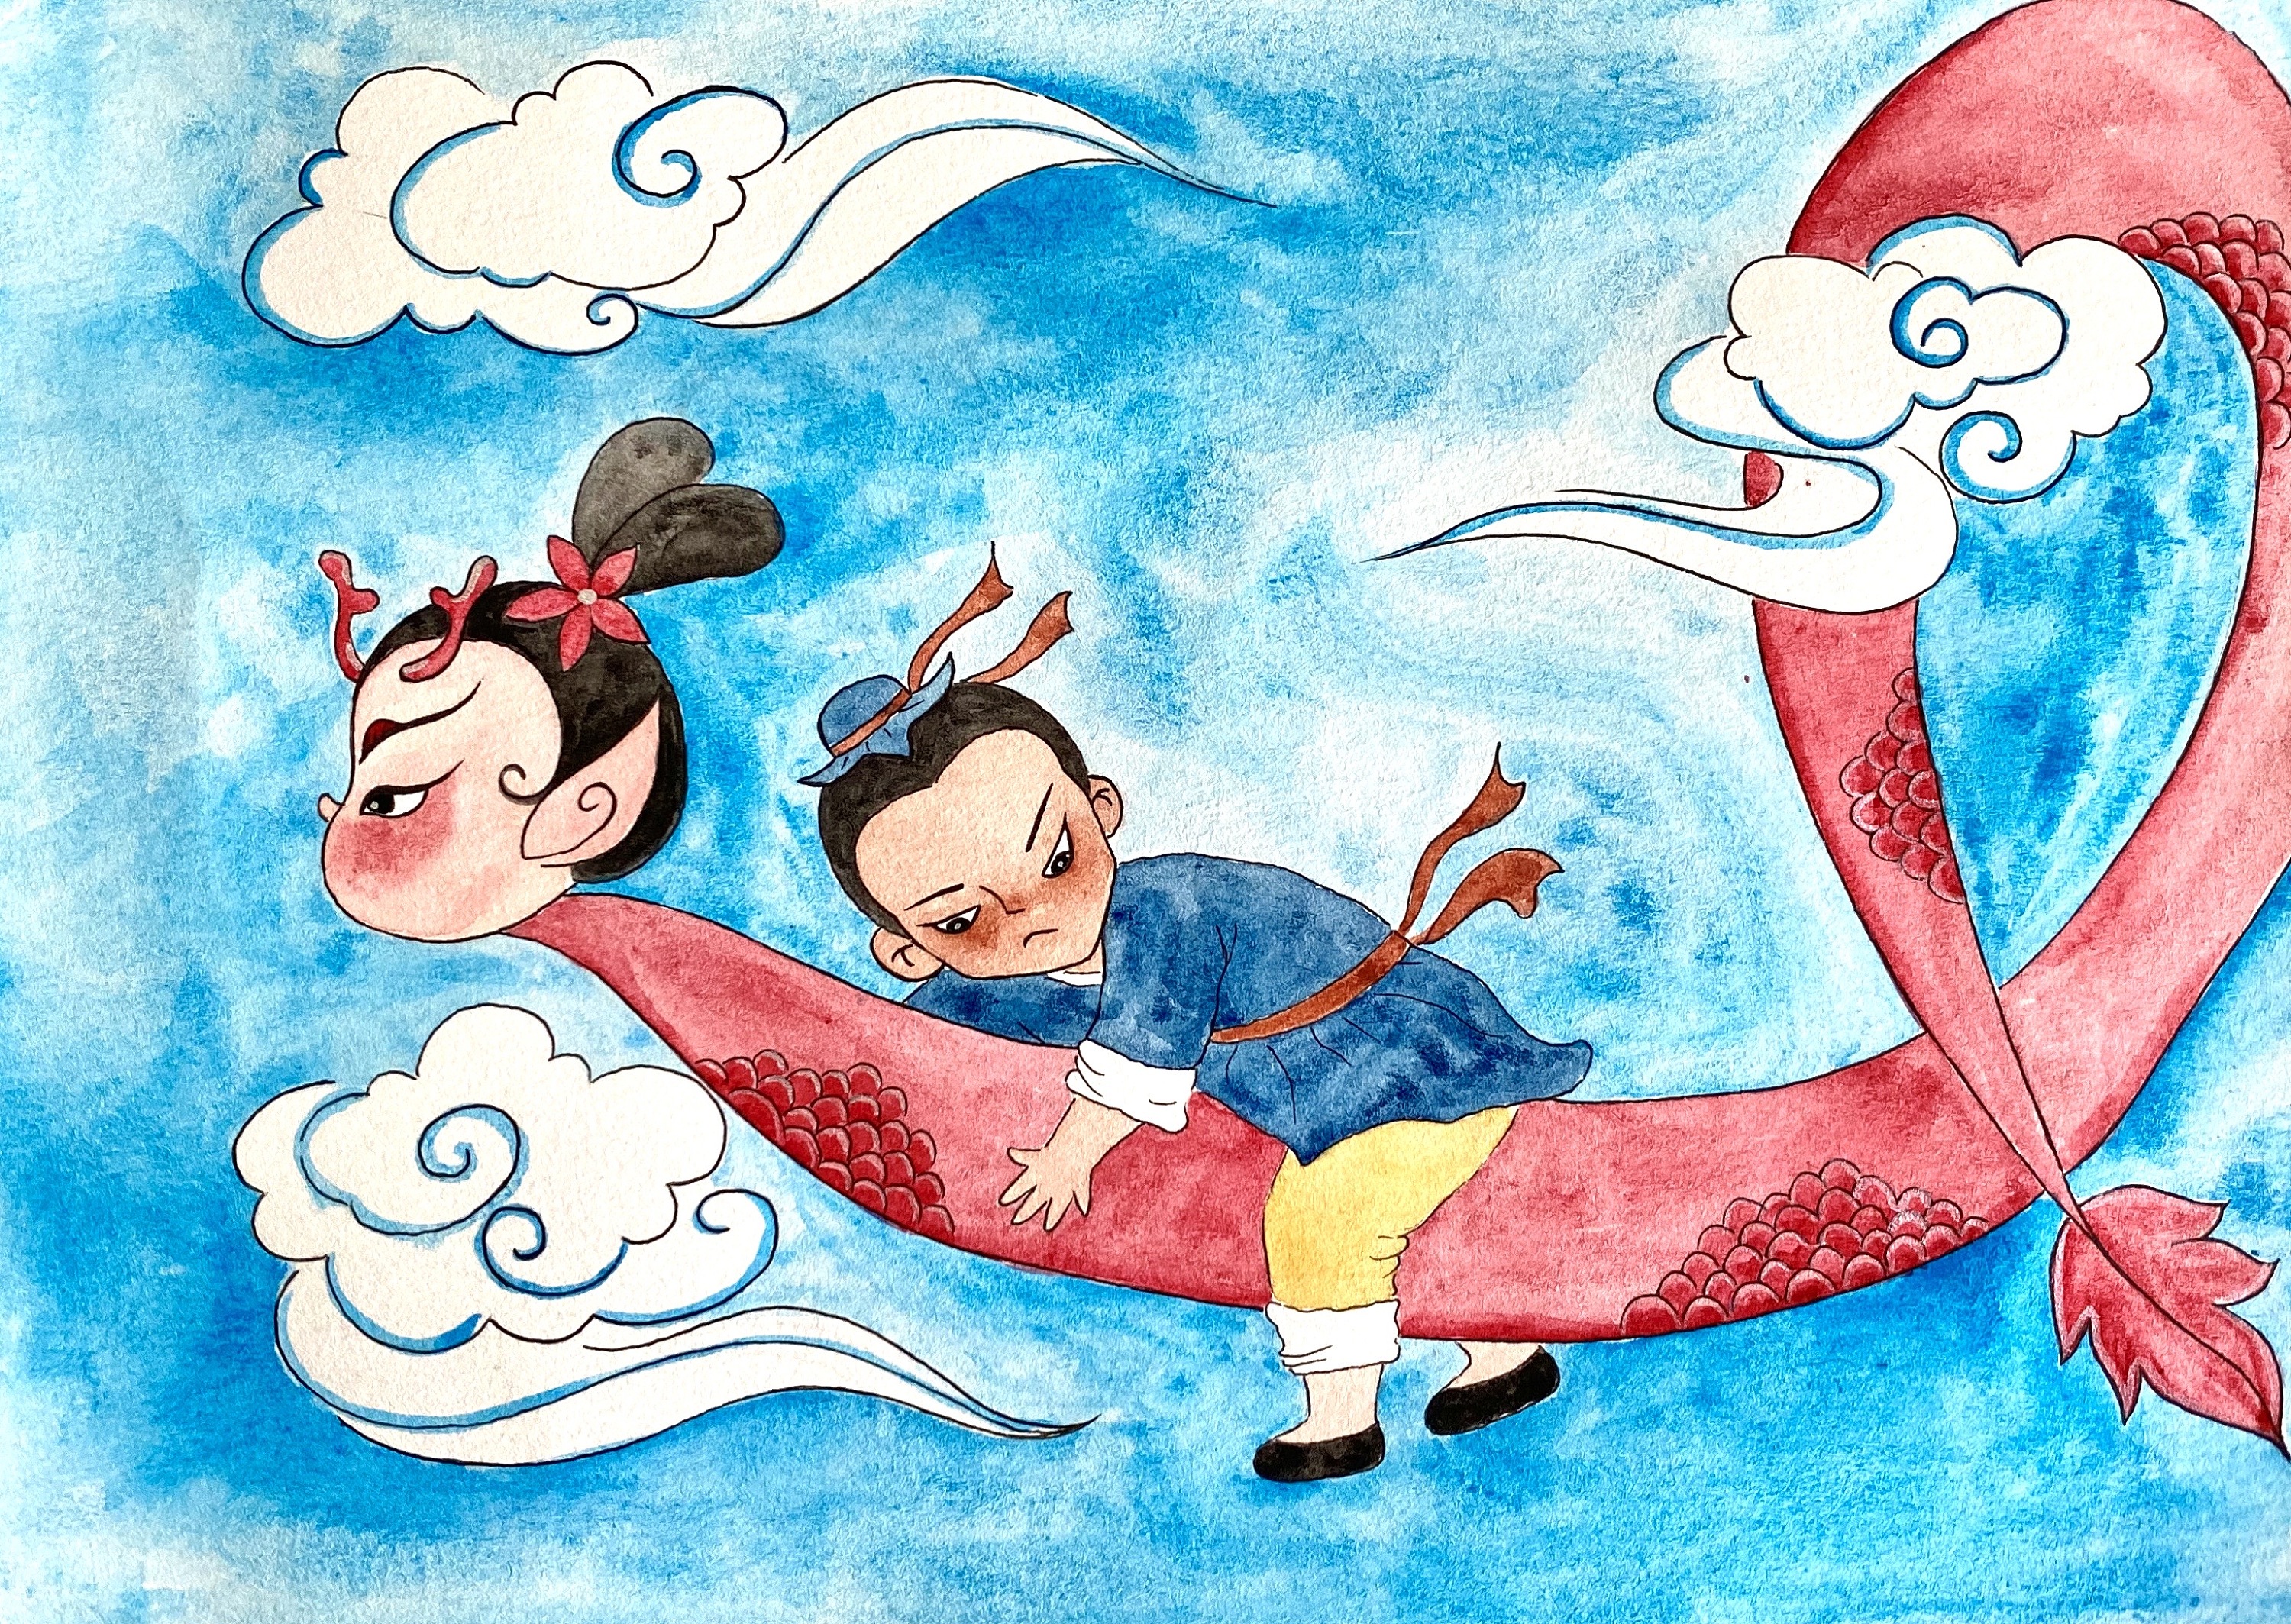 中国神话故事绘本制作图片